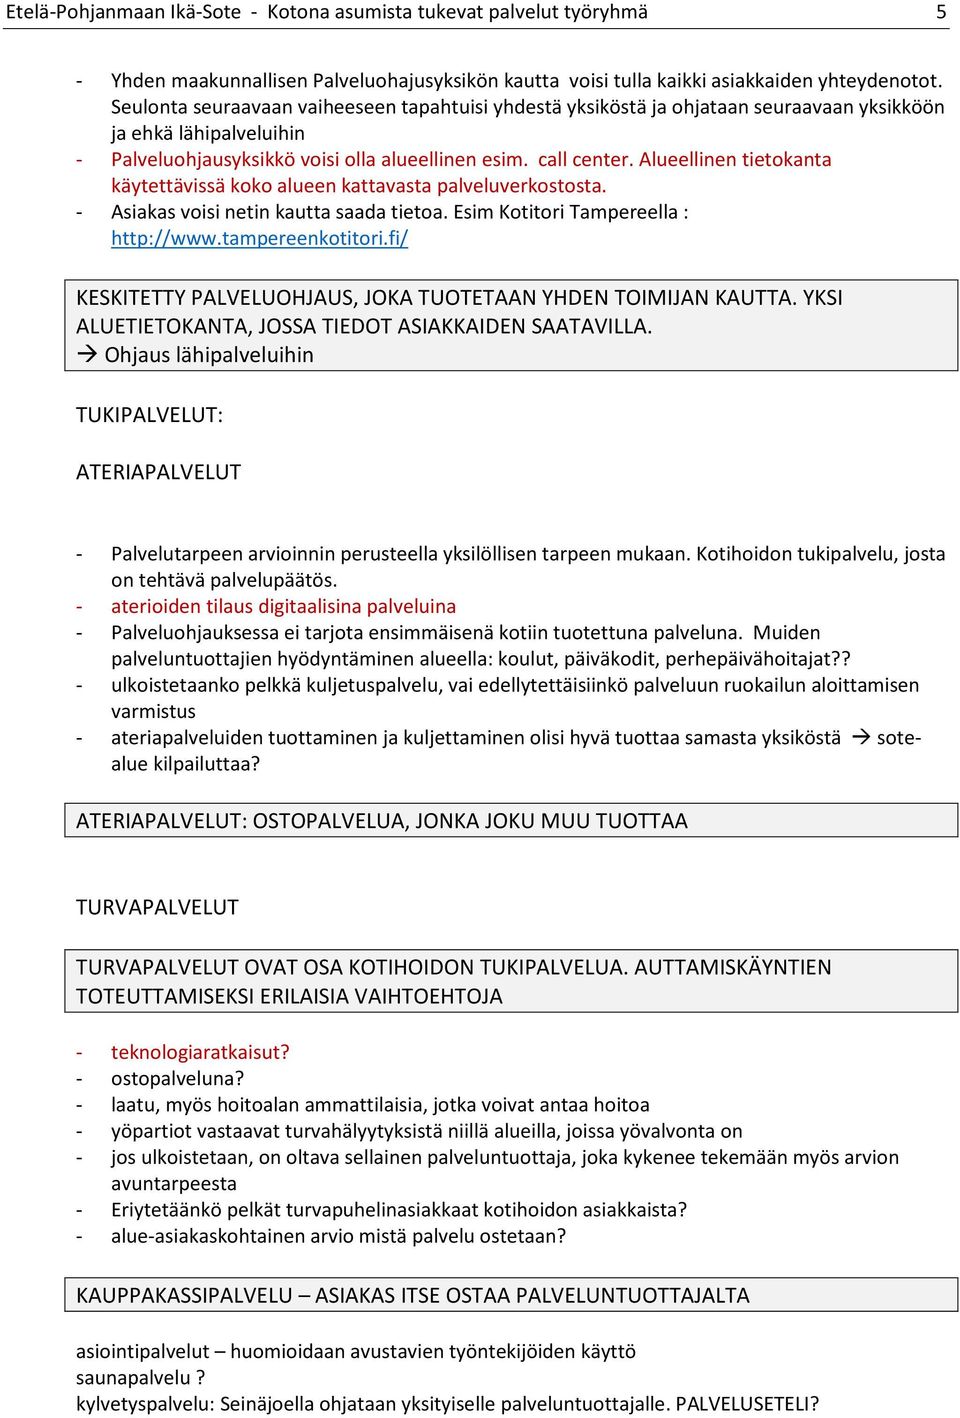 Alueellinen tietokanta käytettävissä koko alueen kattavasta palveluverkostosta. - Asiakas voisi netin kautta saada tietoa. Esim Kotitori Tampereella : http://www.tampereenkotitori.